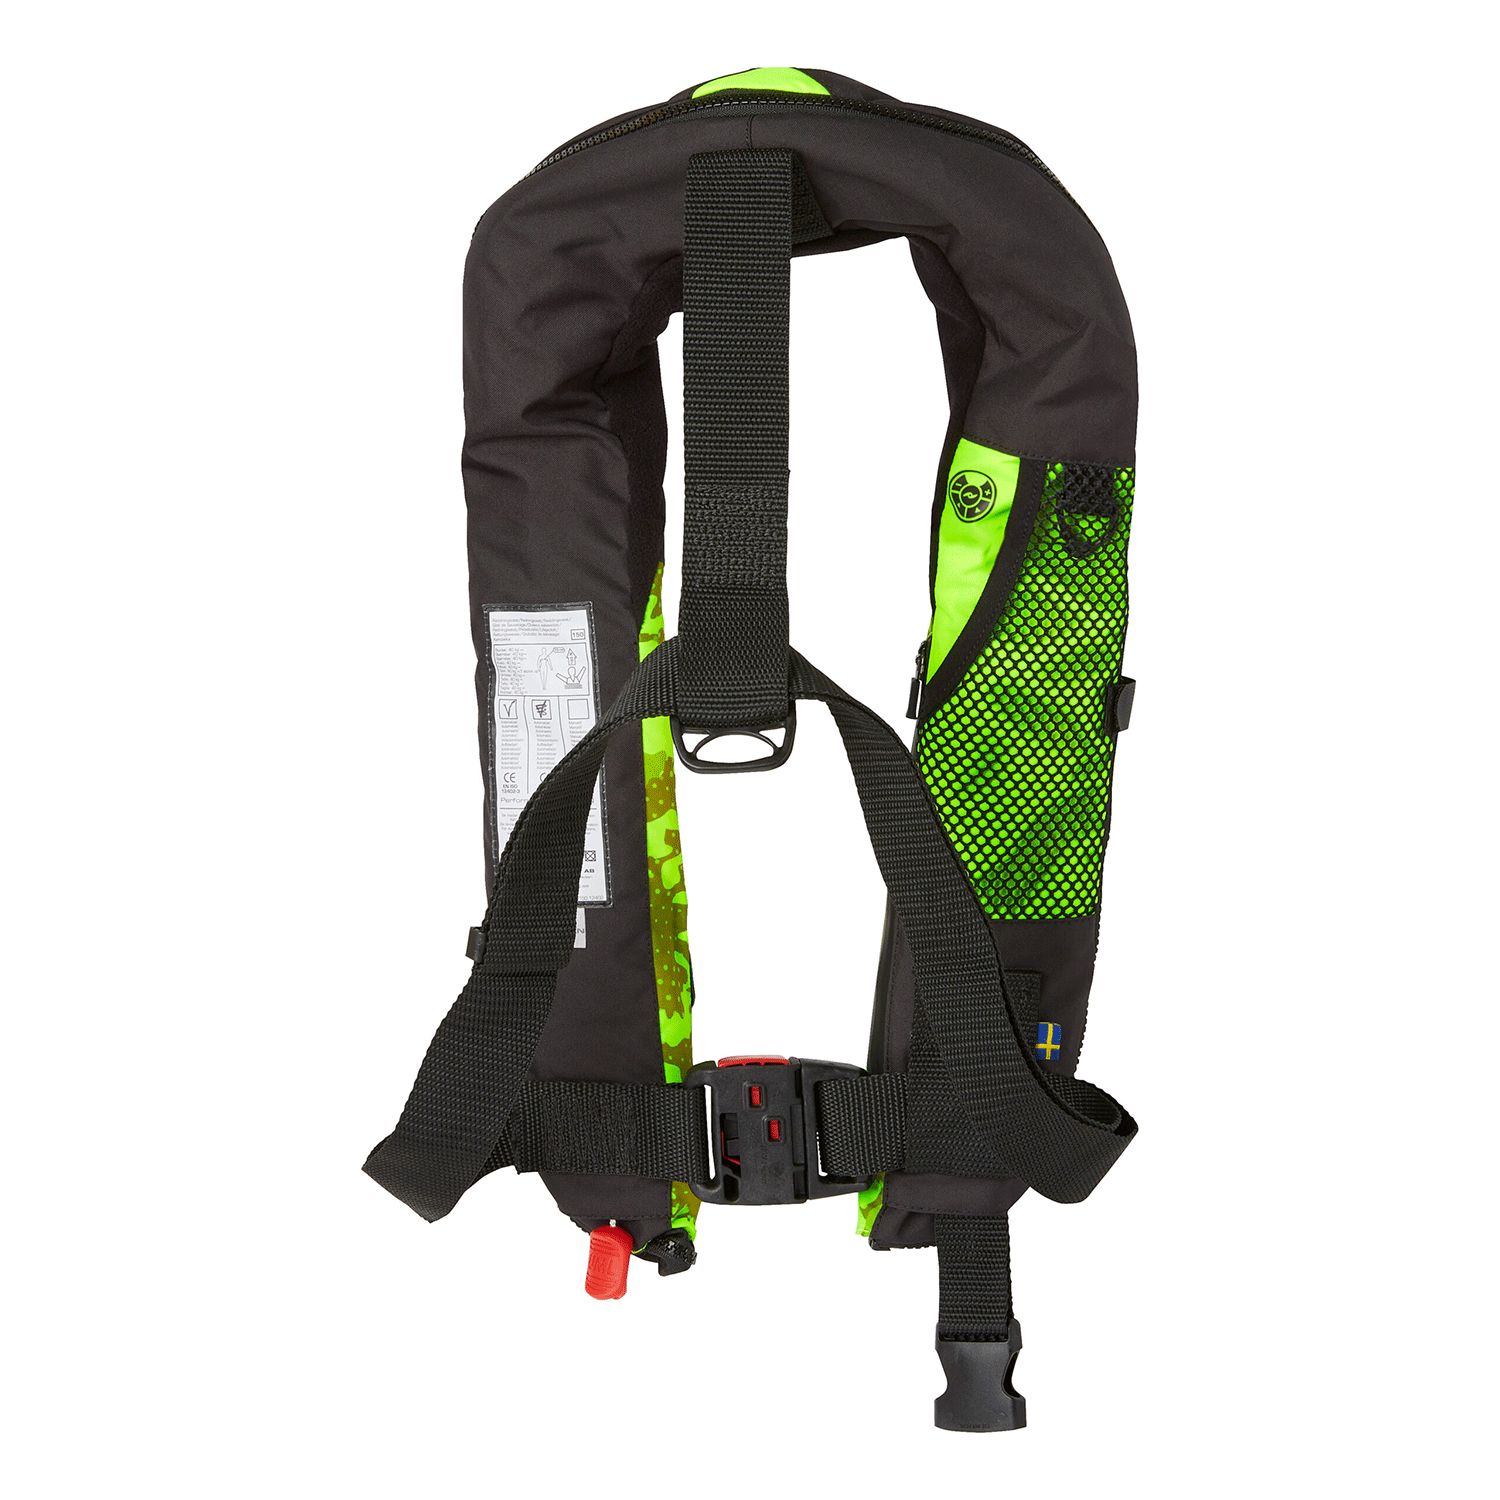 BALTIC Mako Manual Lifejacket